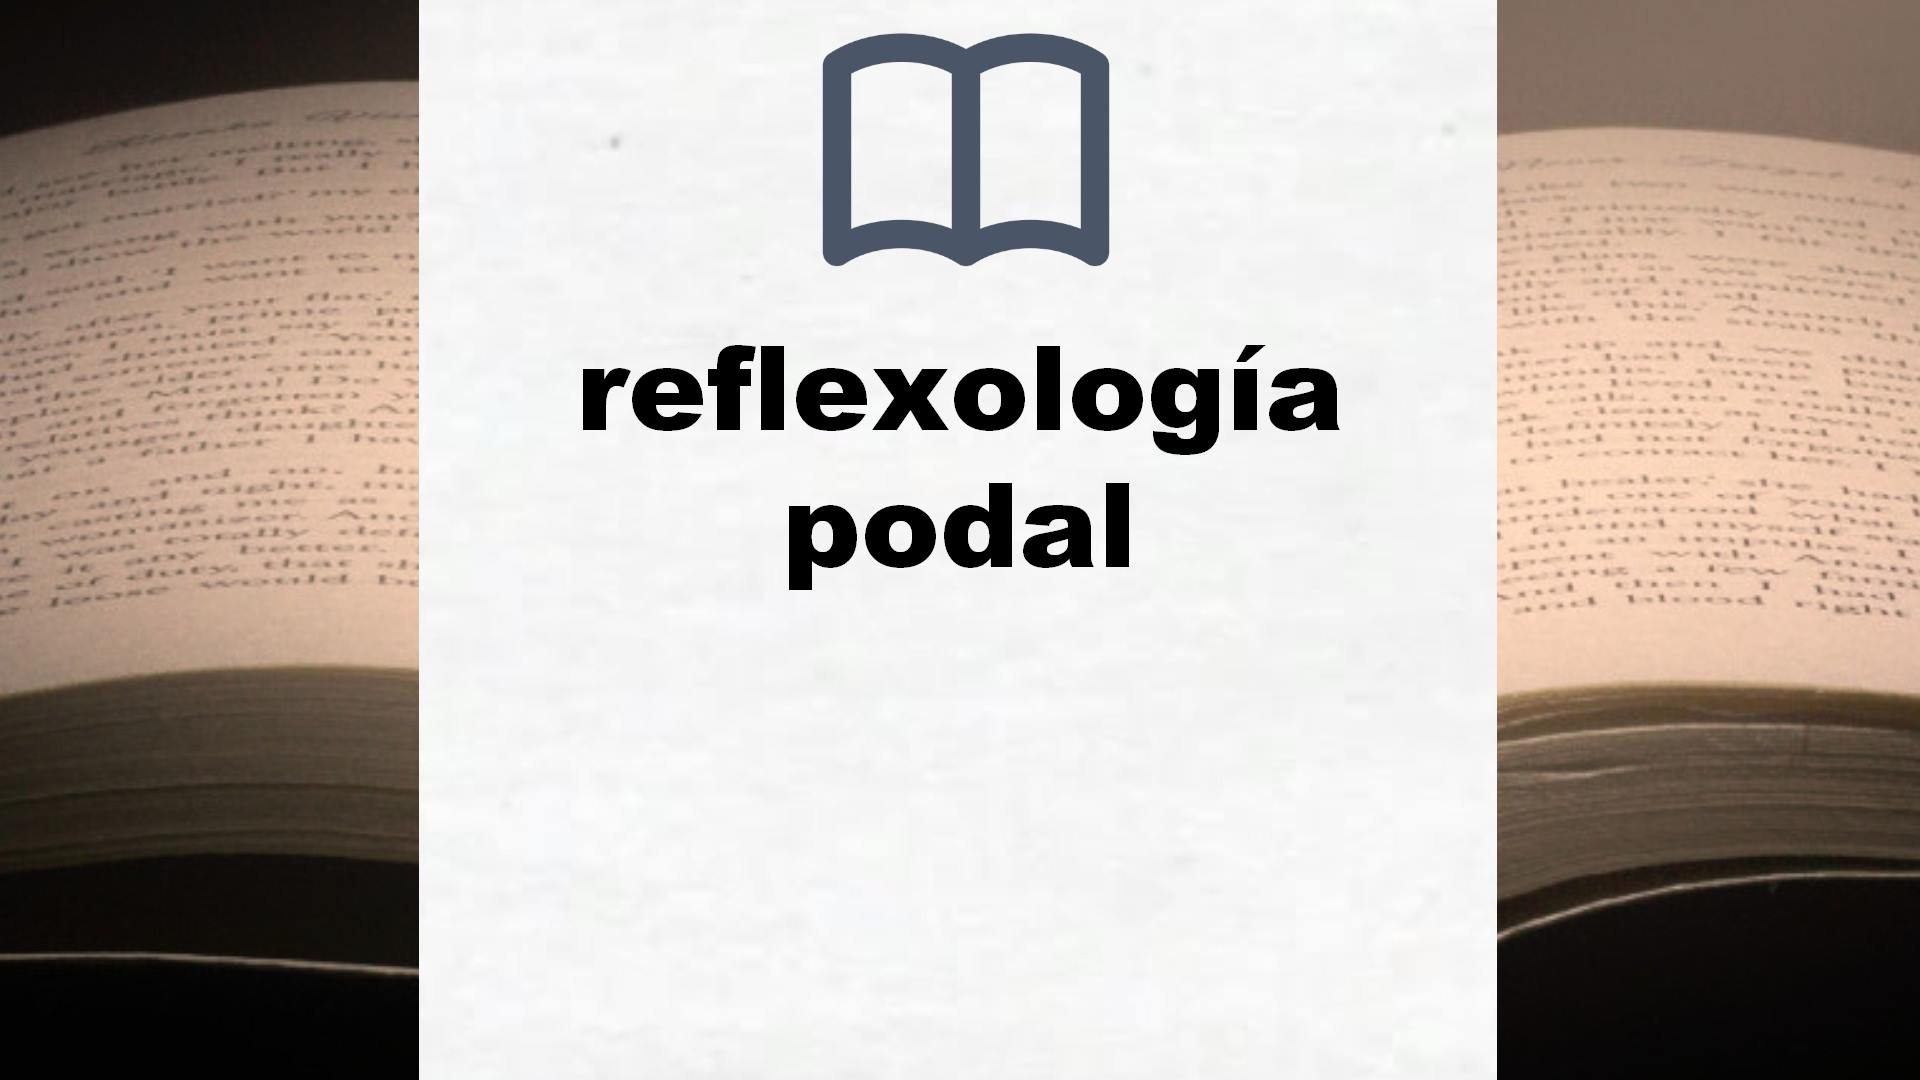 Libros sobre reflexología podal